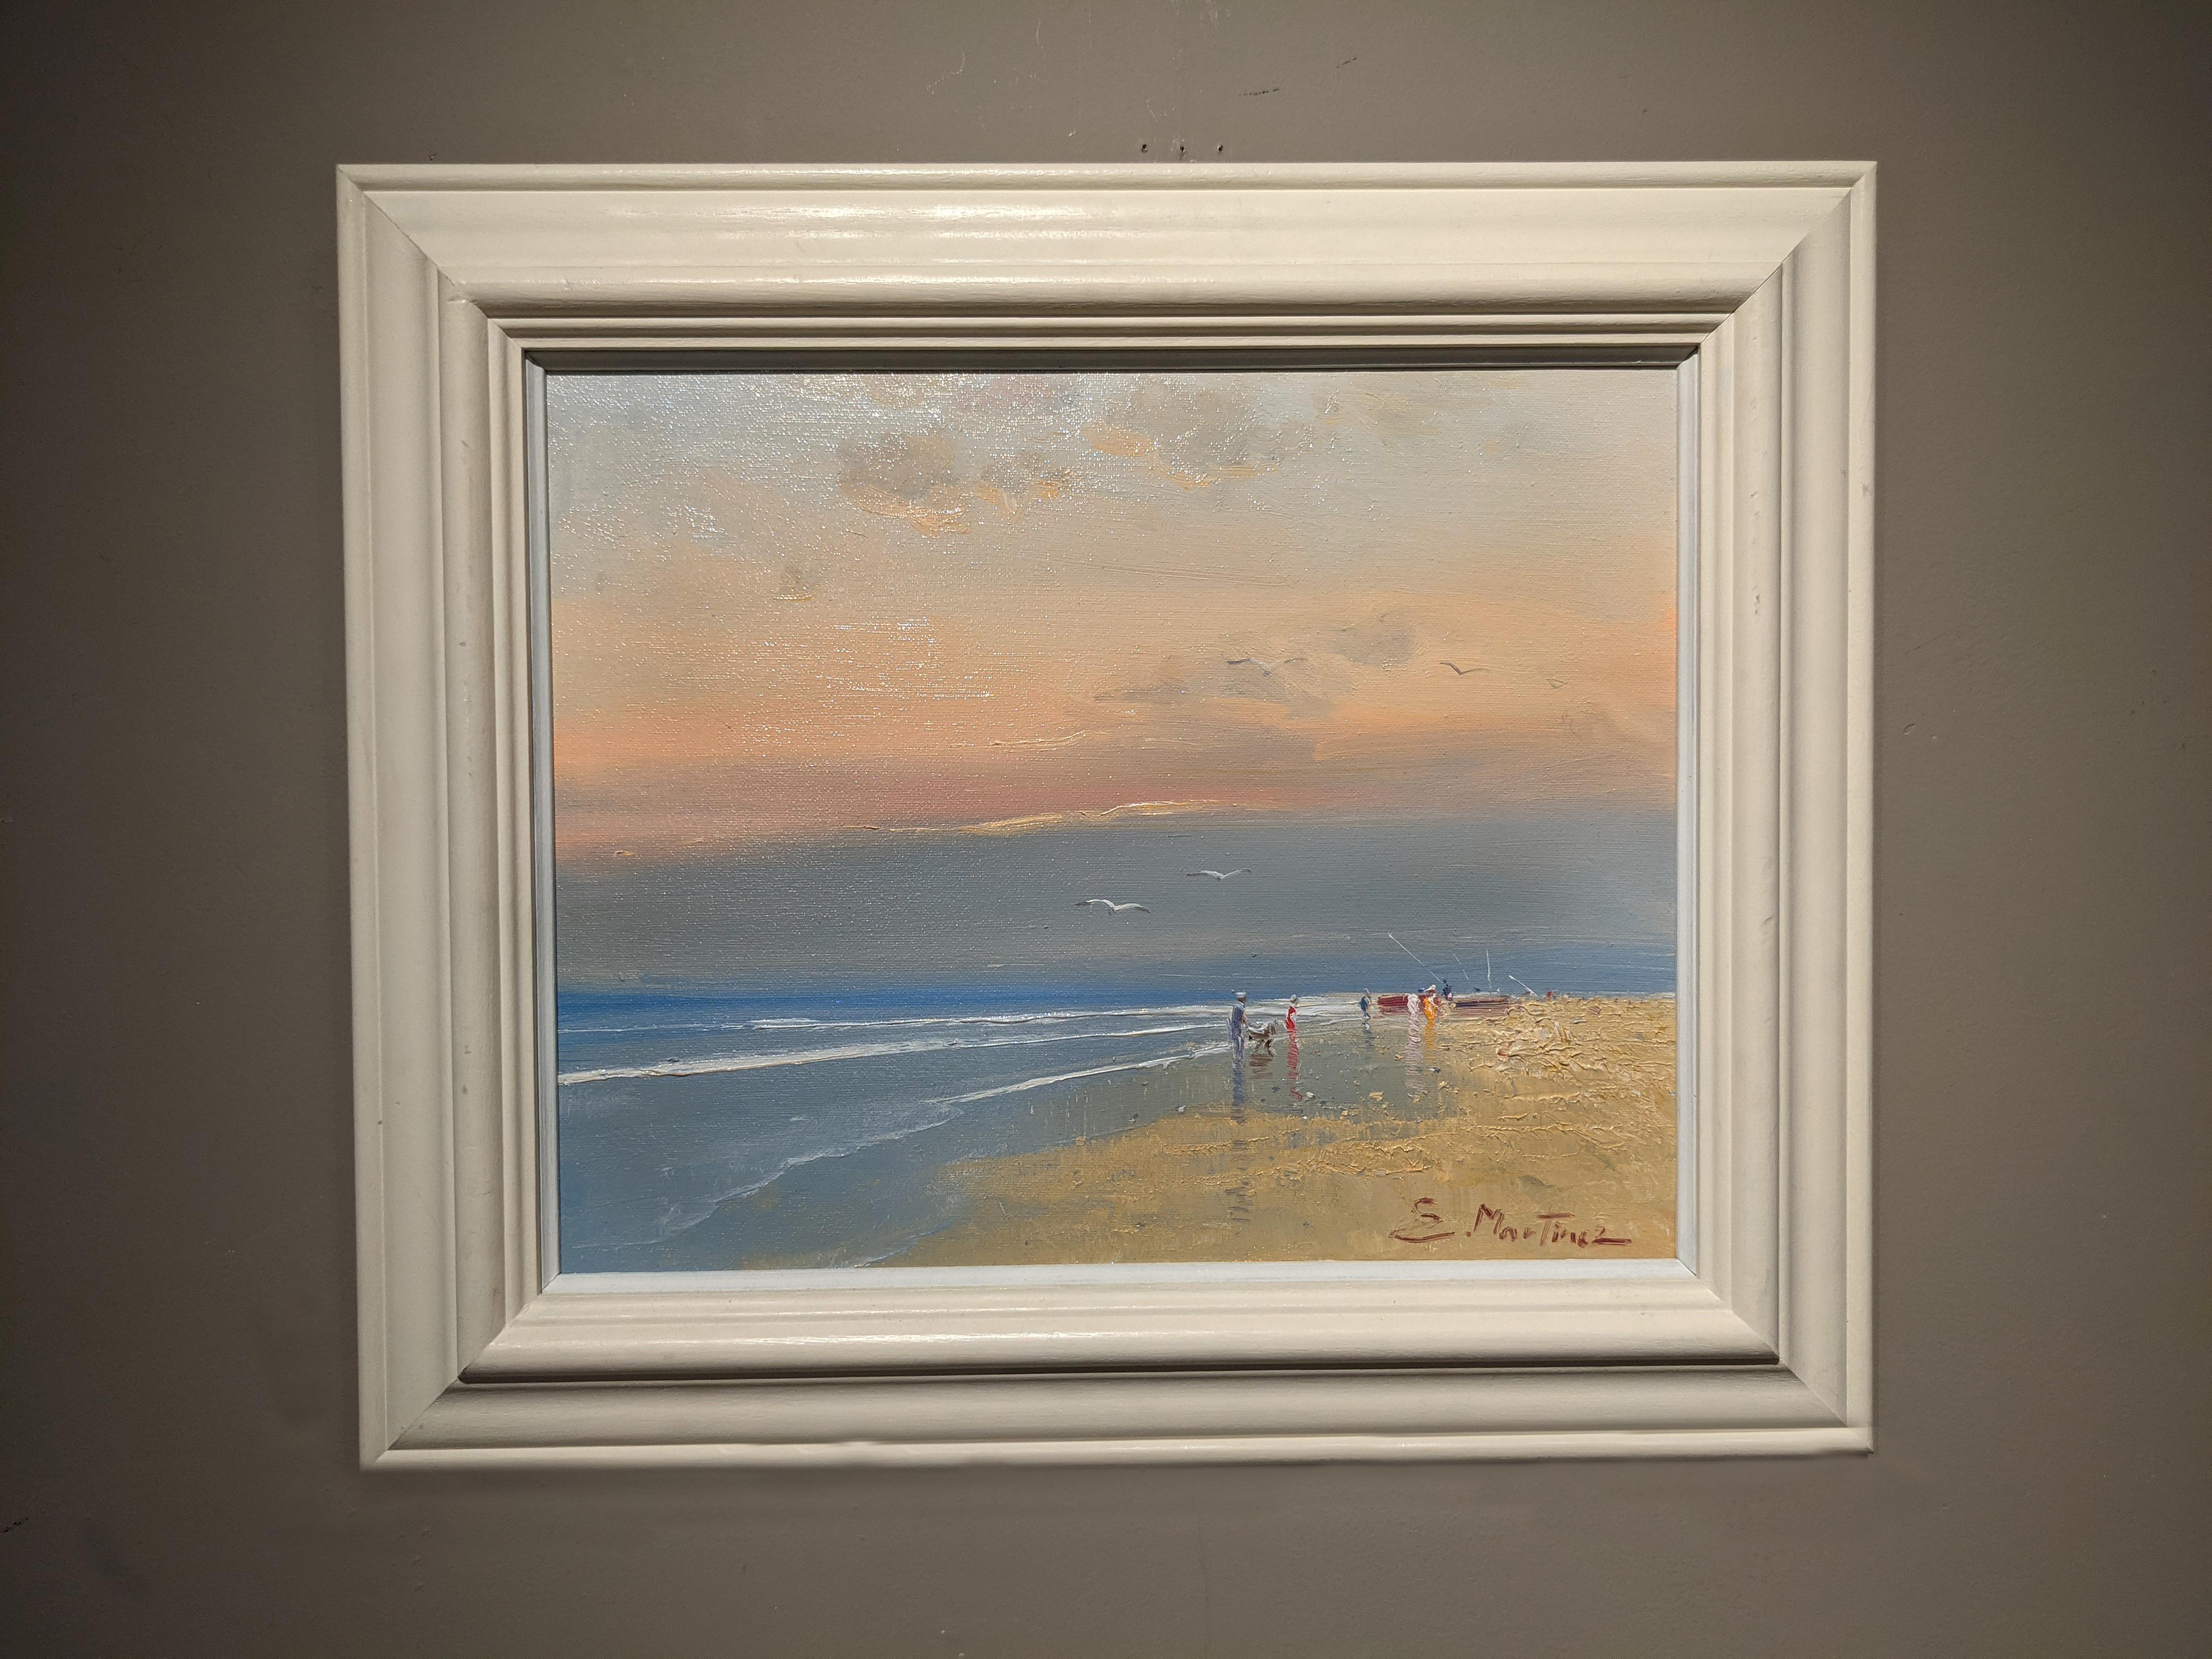 'An Evening Stroll' Peinture contemporaine de paysage de plage avec la mer, le sable et le ciel. - Painting de E. Martinez